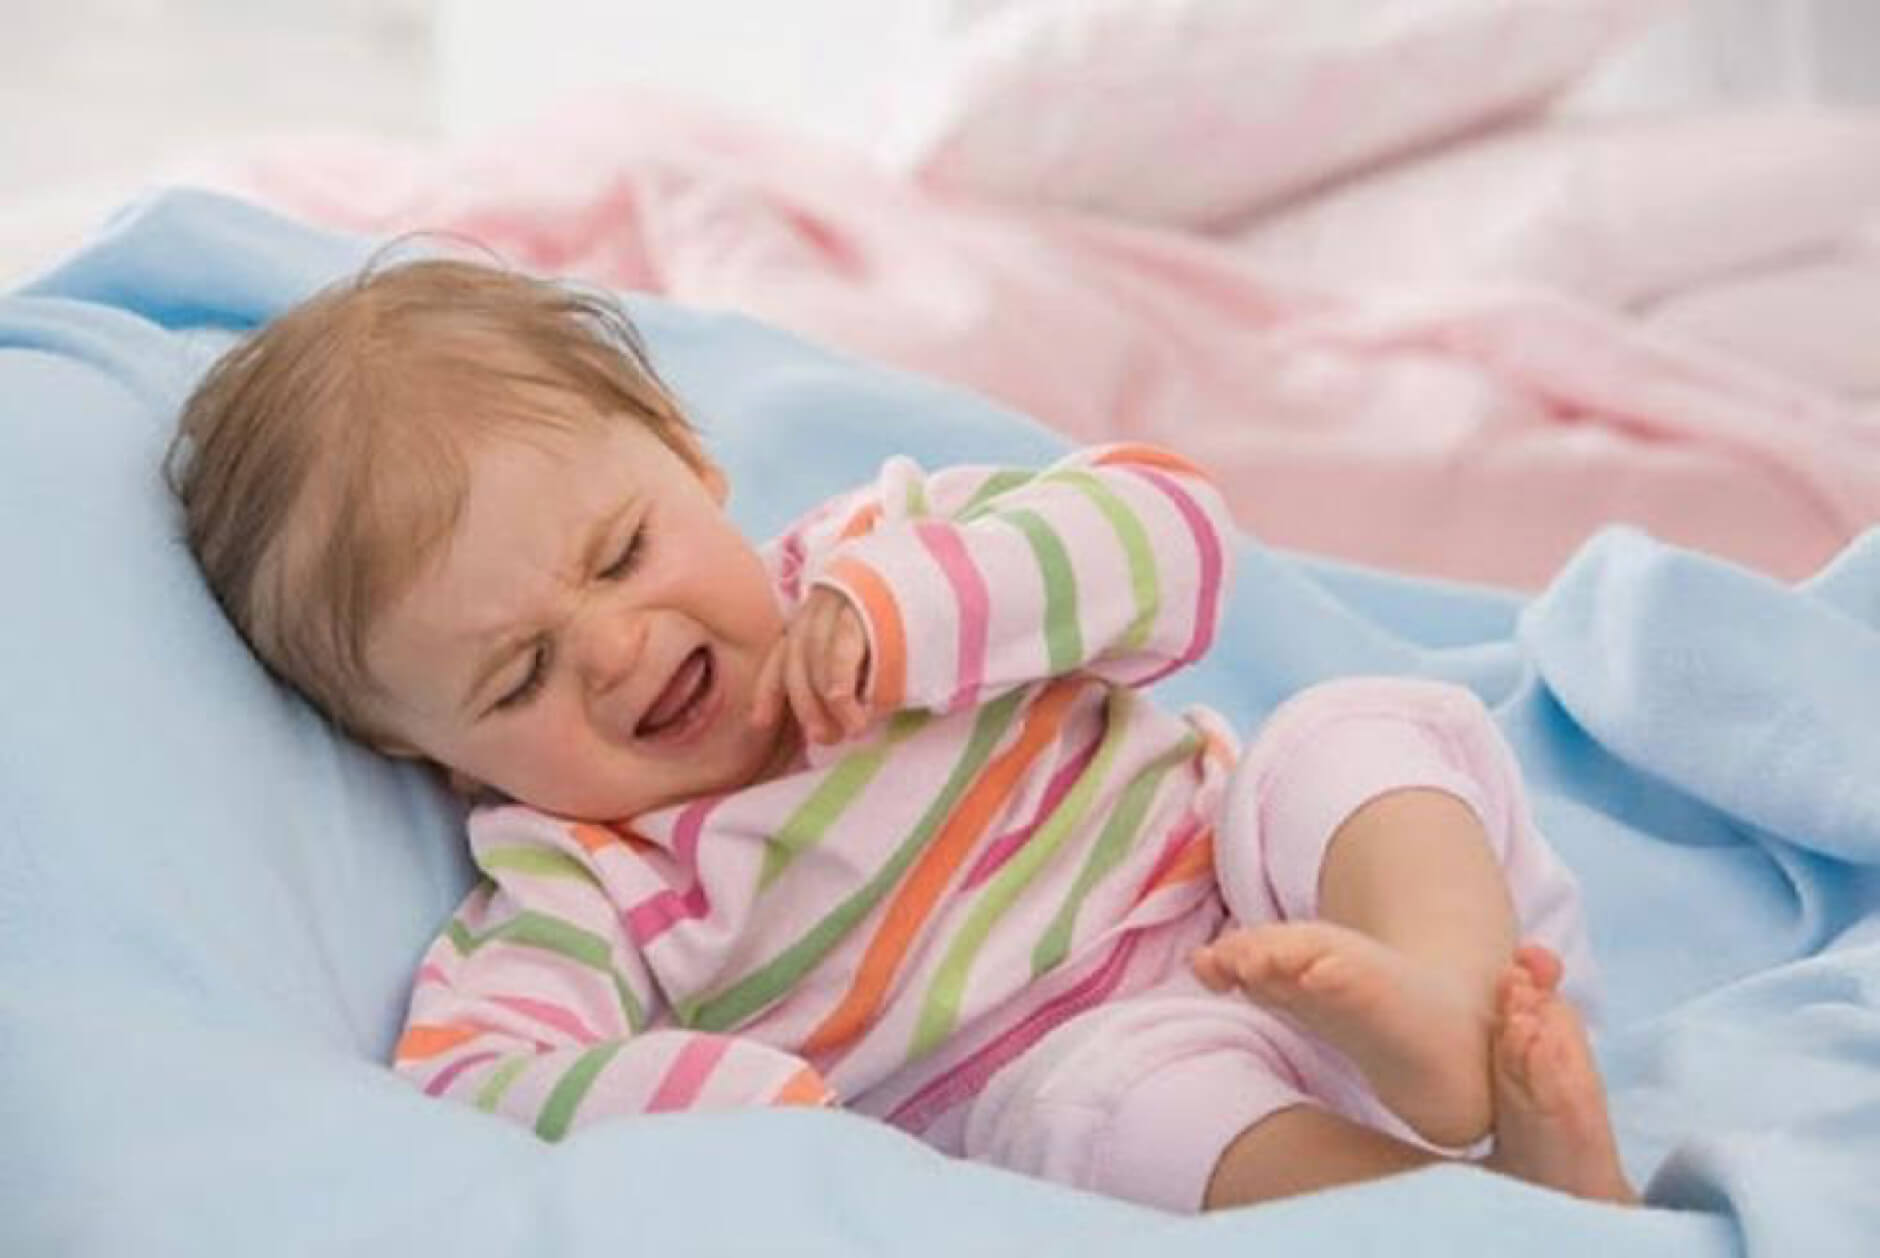 Thay đổi các thói quen sinh hoạt xấu để trẻ ngủ ngon hơn